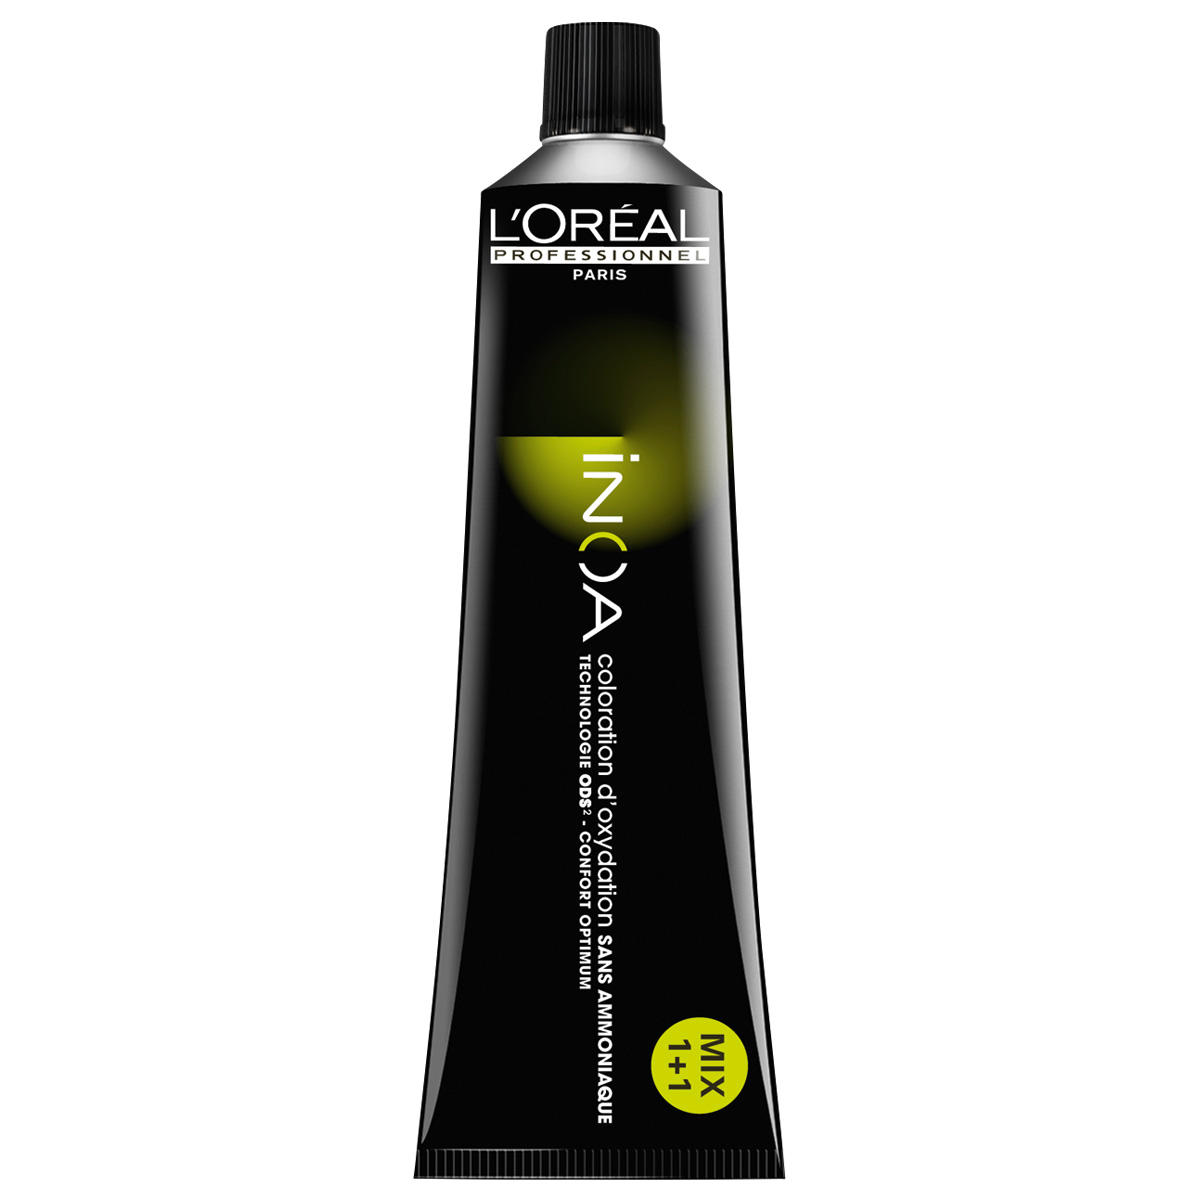 L'Oréal Professionnel Paris Coloration 8 blond clair, Tube 60 ml - 1